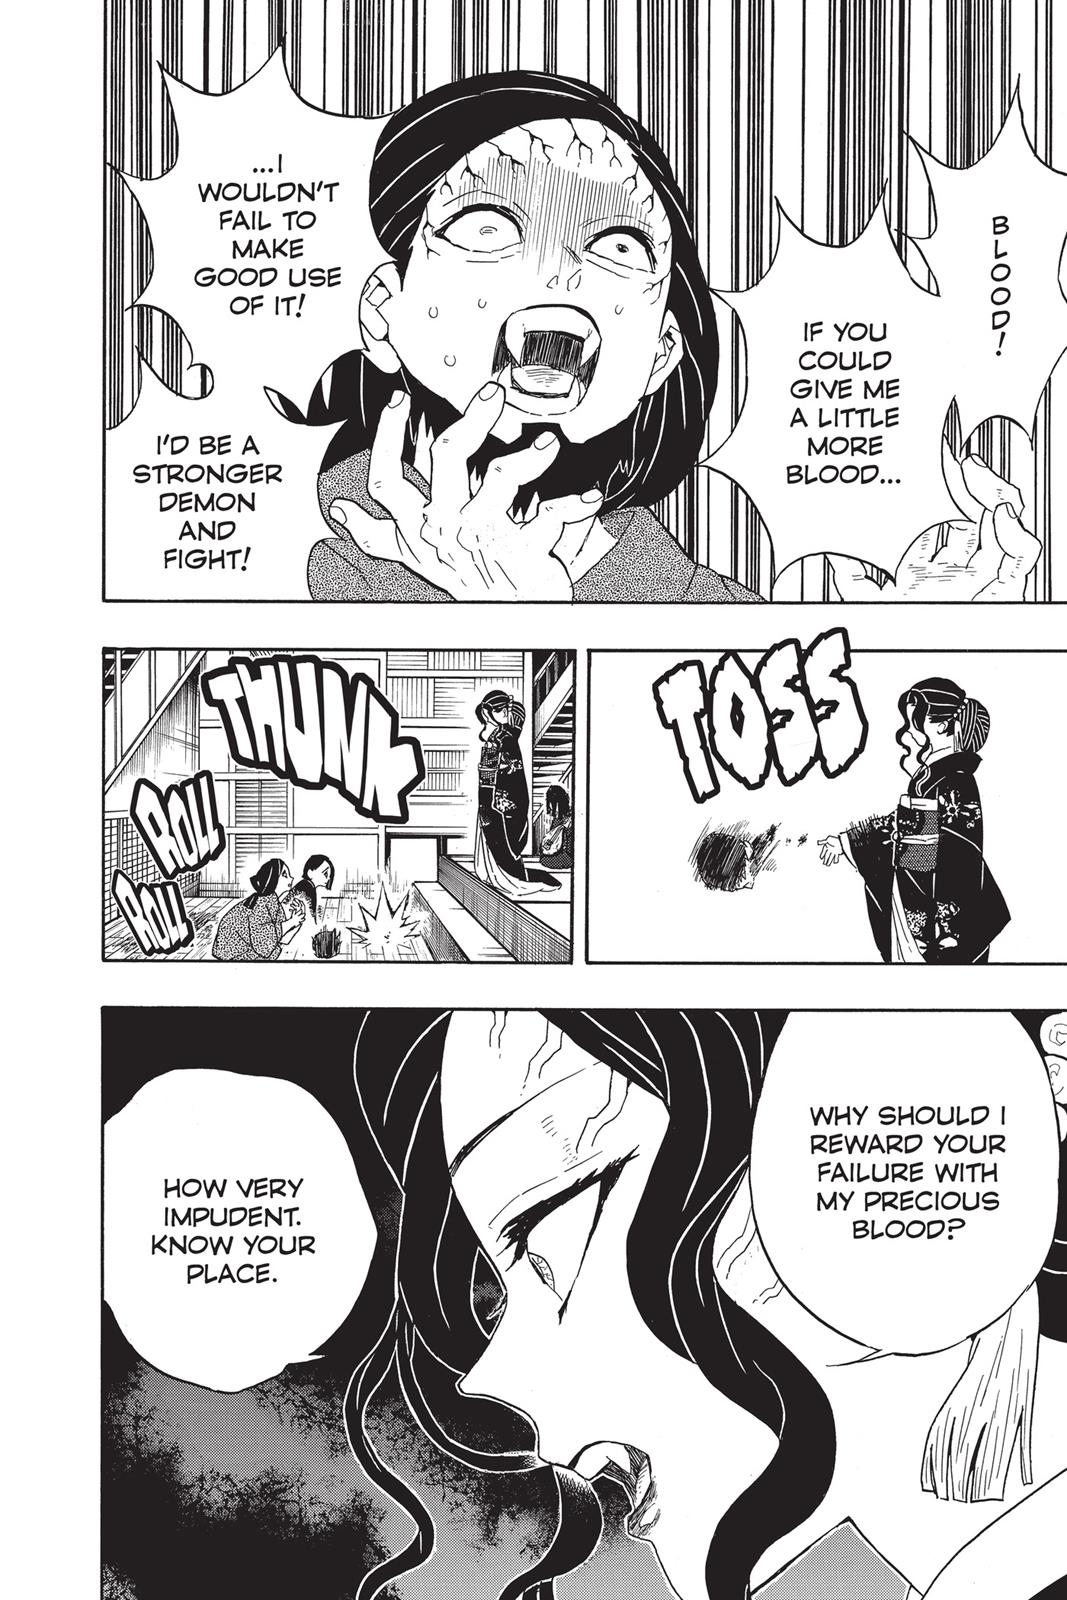 Demon Slayer Manga Manga Chapter - 52 - image 5